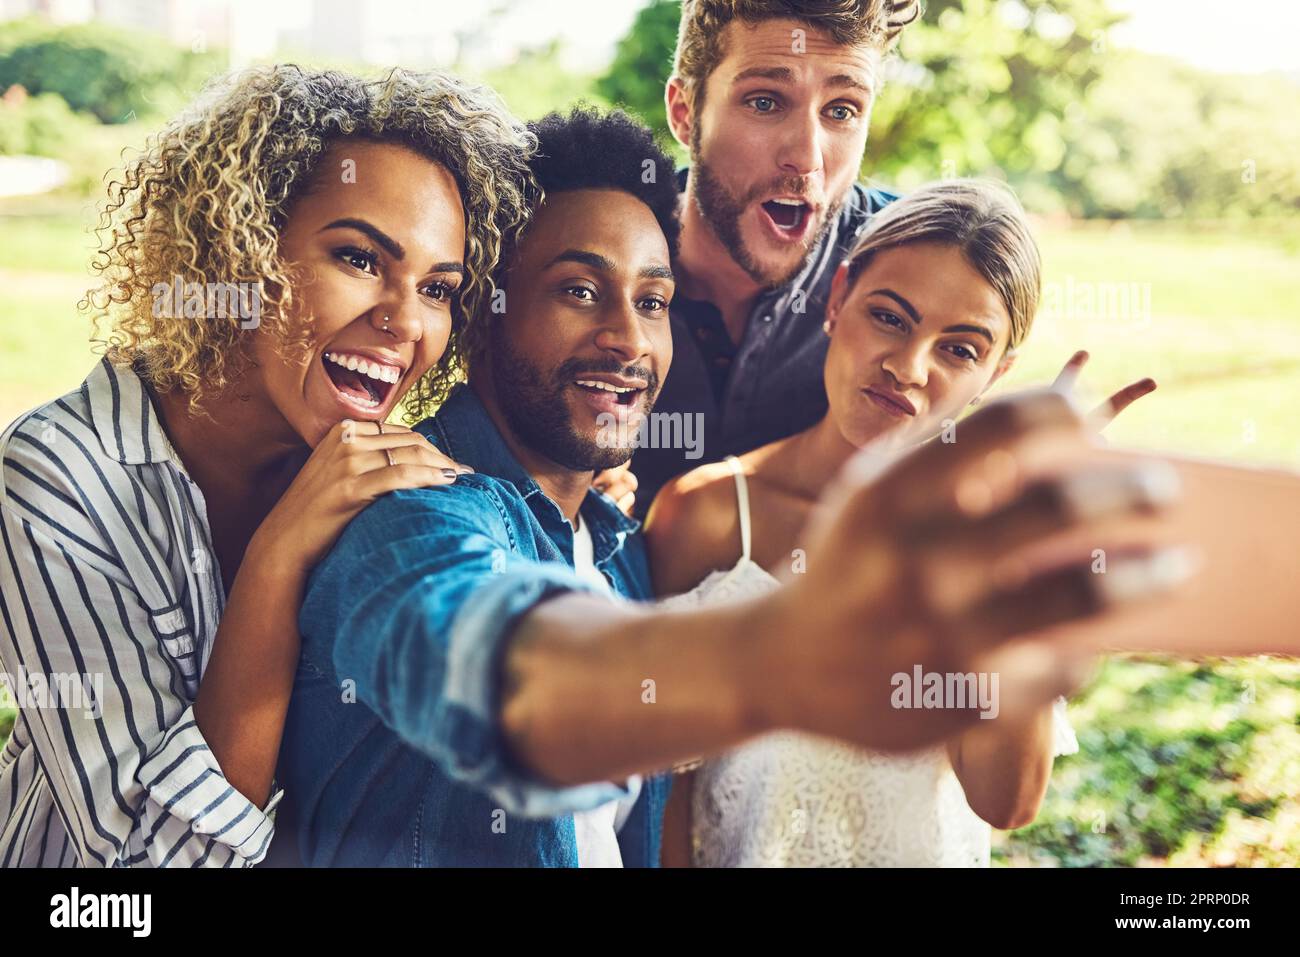 Questa immagine otterrà tutti i simili. due giovani coppie felici che prendono un selfie insieme all'aperto Foto Stock